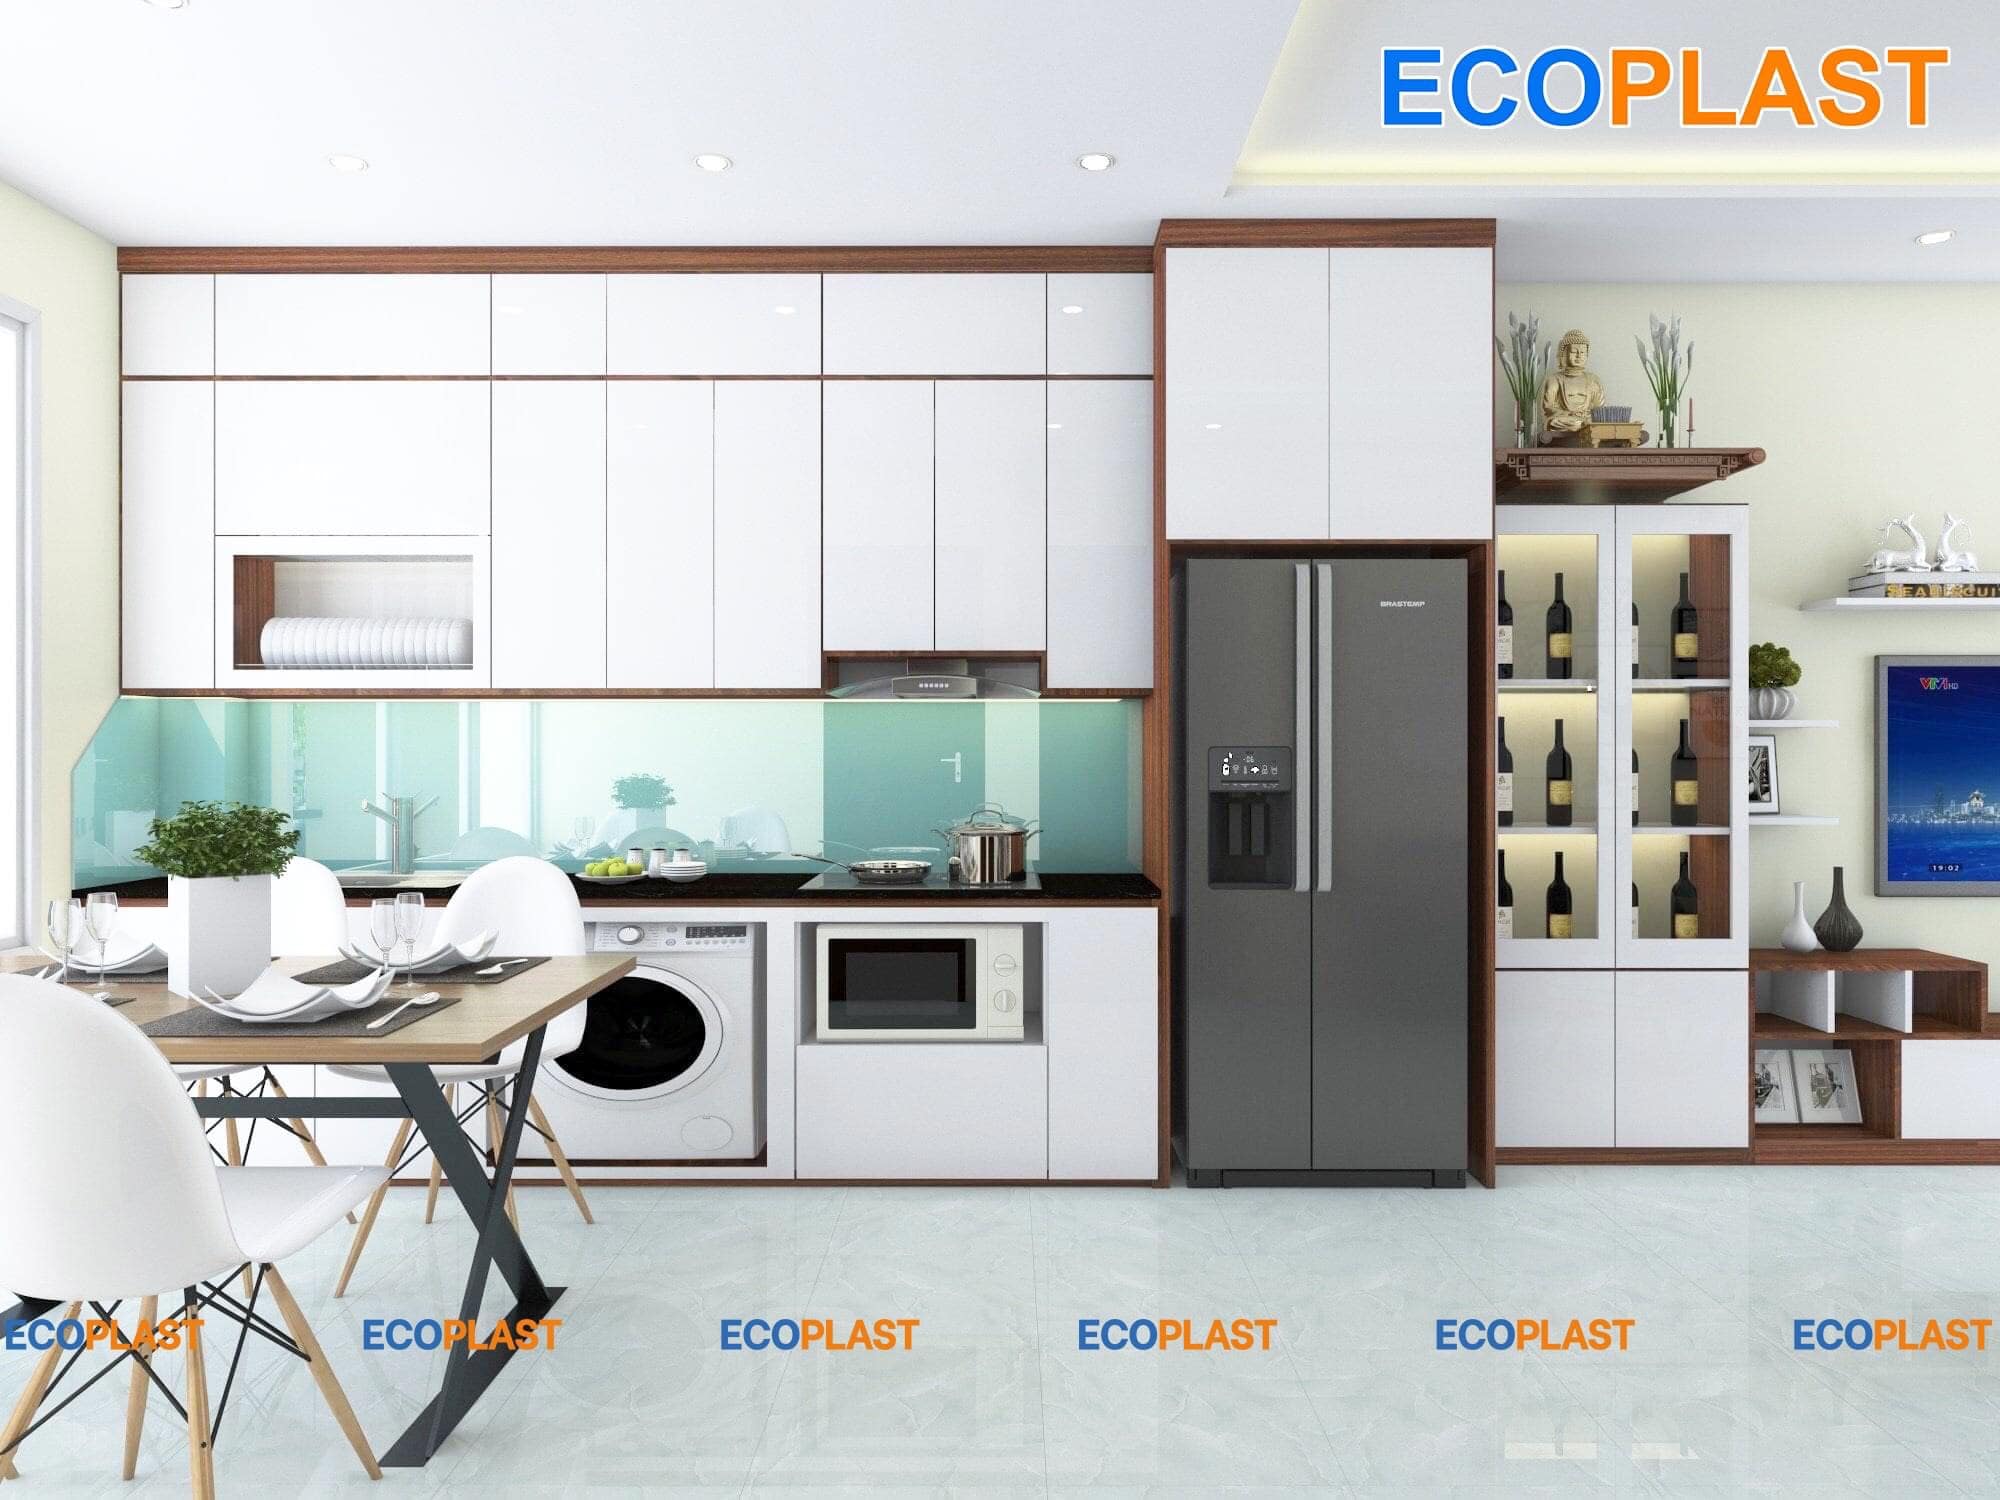 Tủ bếp nhựa Ecoplast cao cấp - Cửa Hàng Tủ Nhựa - Tủ Quần Áo Nhựa: Tủ bếp nhựa Ecoplast không chỉ đa năng cho việc lưu trữ đồ bếp mà còn dùng được cho việc lưu trữ quần áo hay các vật dụng khác. Bạn có thể hoàn toàn yên tâm vì đây là sản phẩm chất lượng, được bảo đảm từ Cửa Hàng Tủ Nhựa.